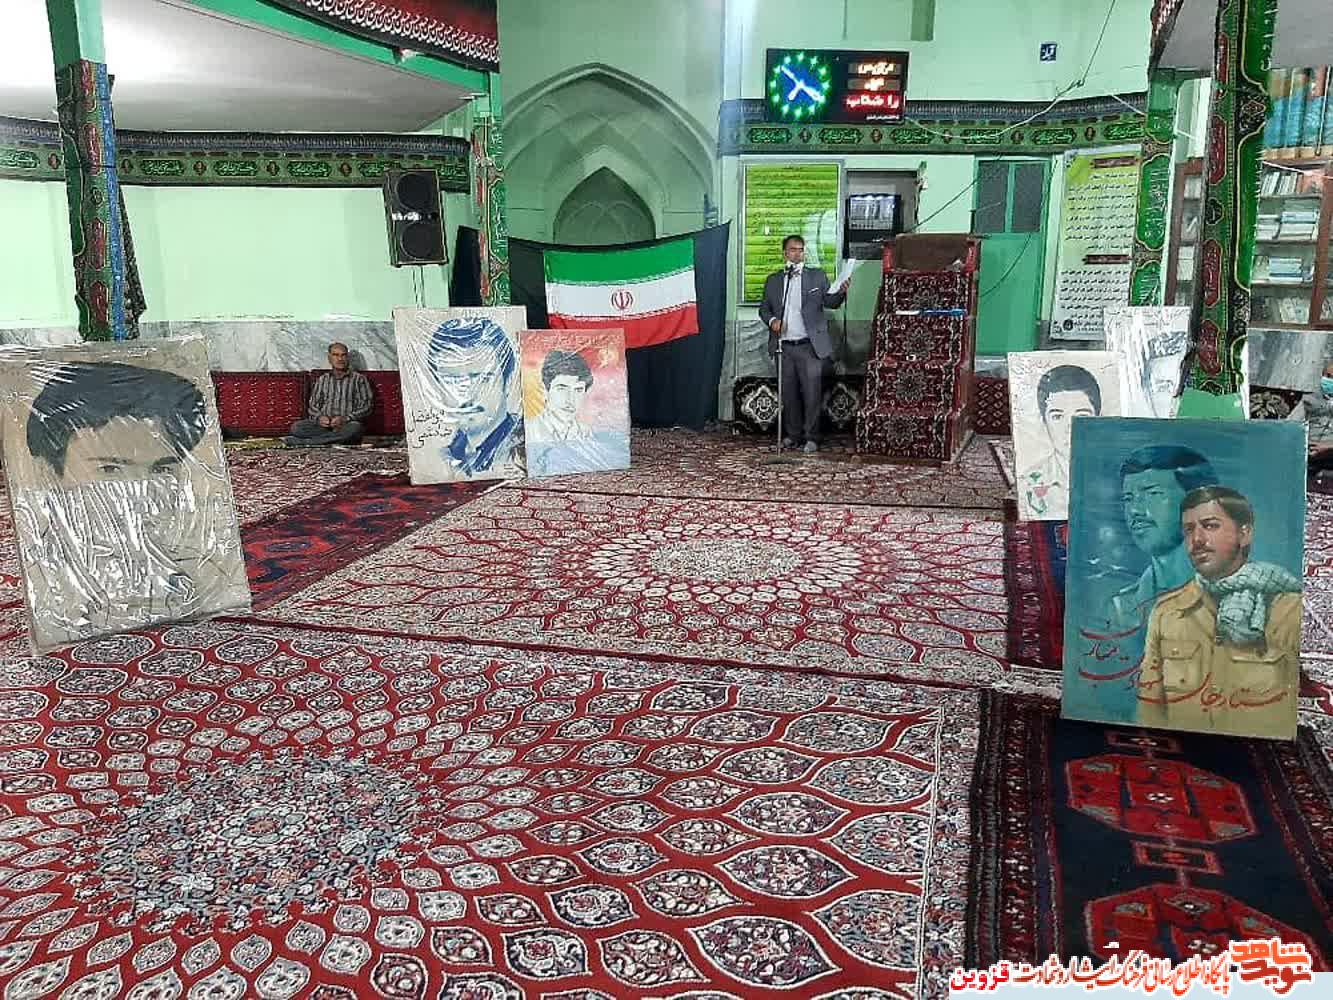 یادبود آزادسازی خرمشهر در روستای شهیدپرور توآباد برگزار شد